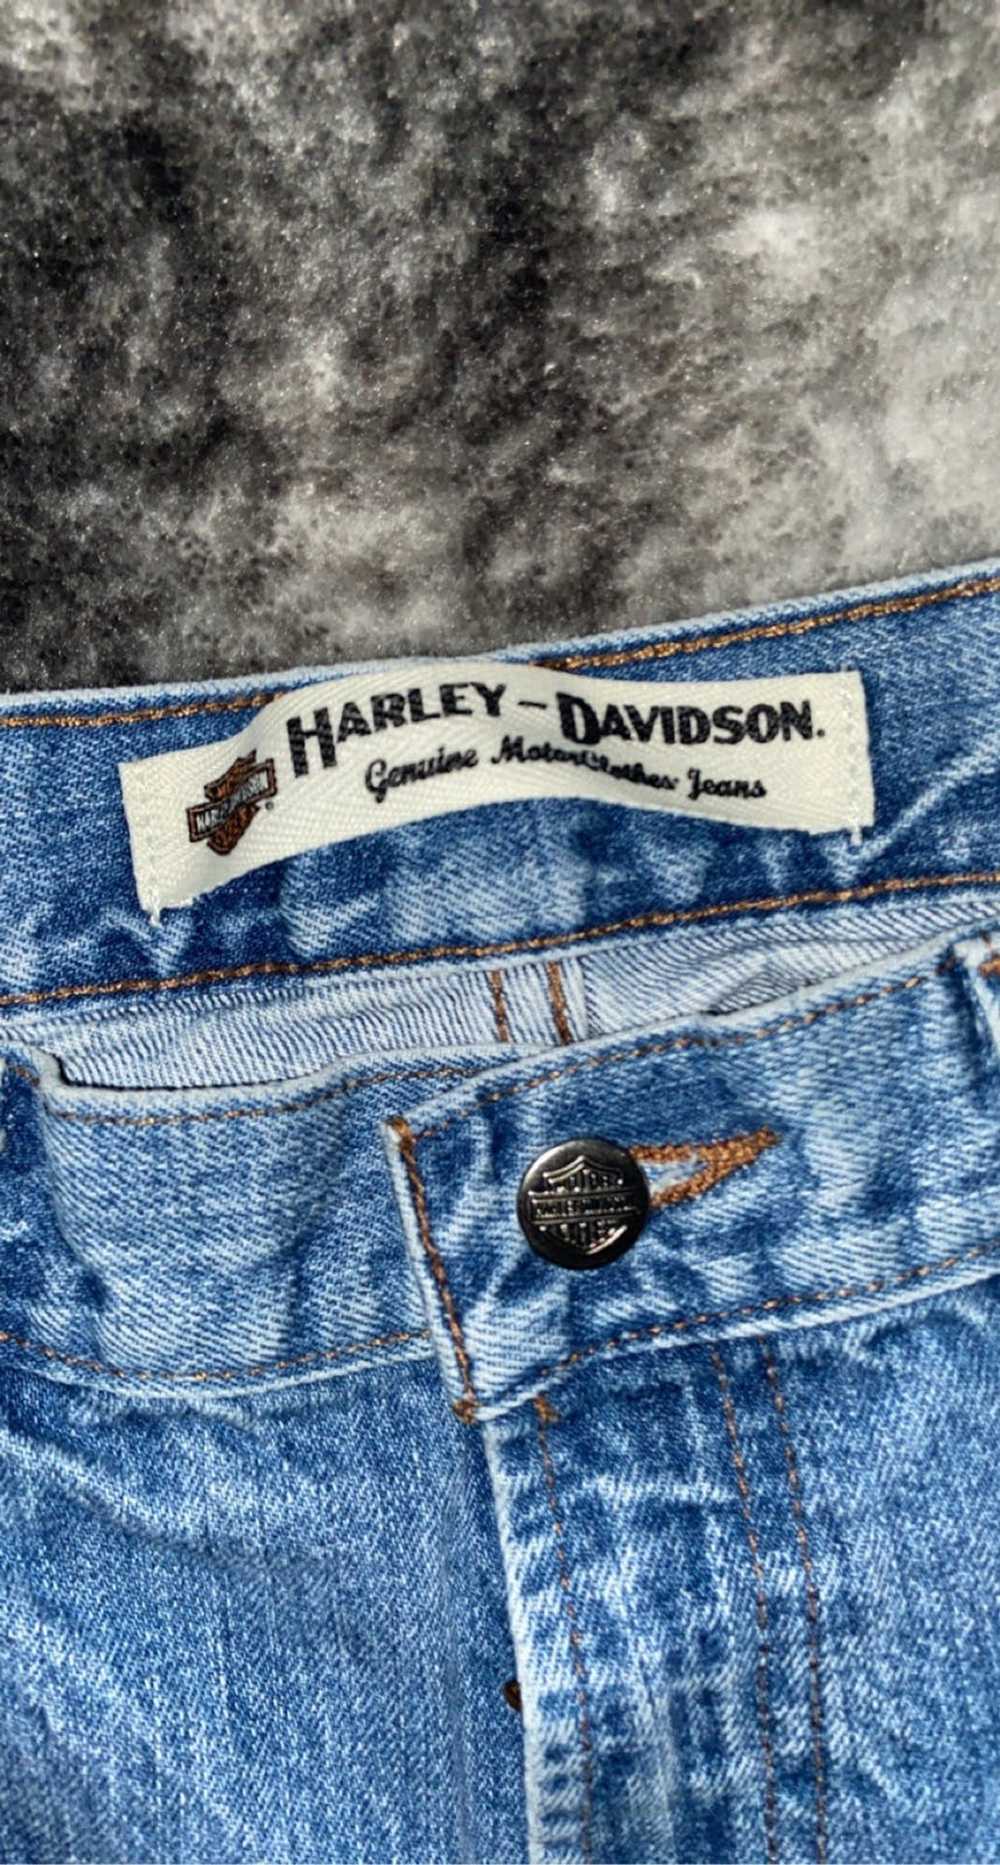 Harley Davidson Vintage Harley Davidson jeans - image 2